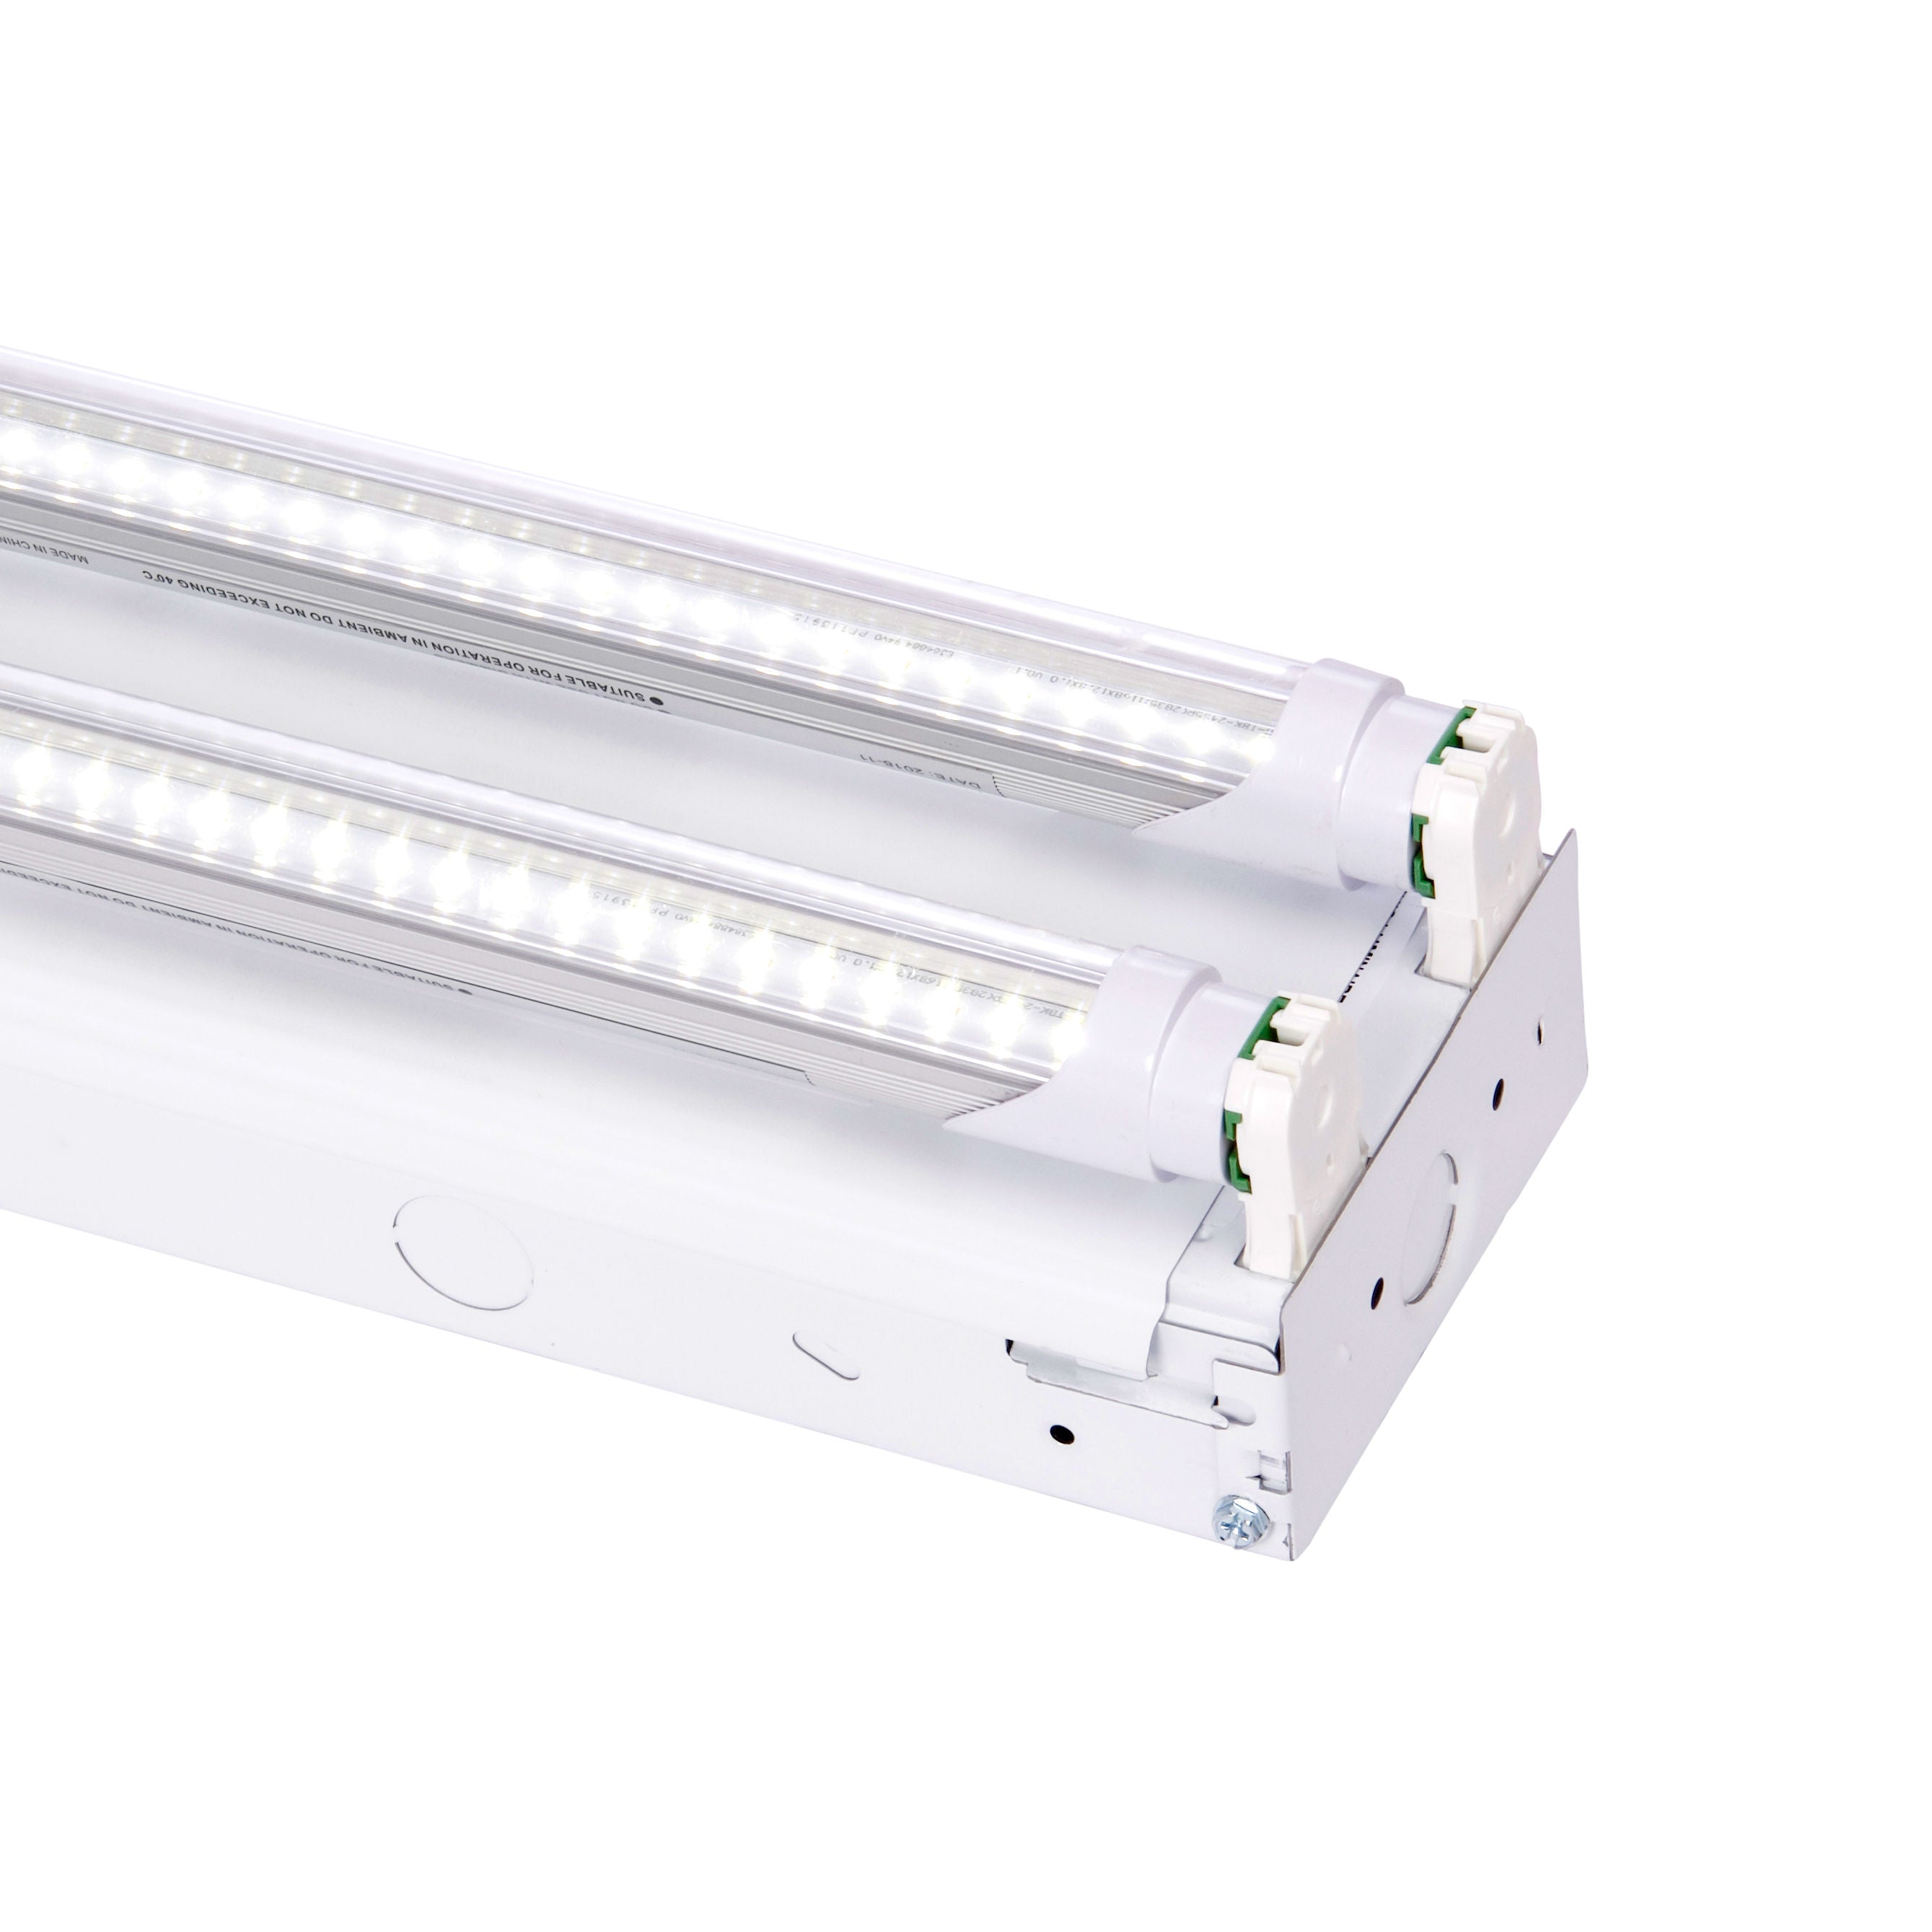 Periodiek calcium Terughoudendheid The BOLT – 2 Lamp LED Shop Light – 6,200 Lumens – PrimeLights